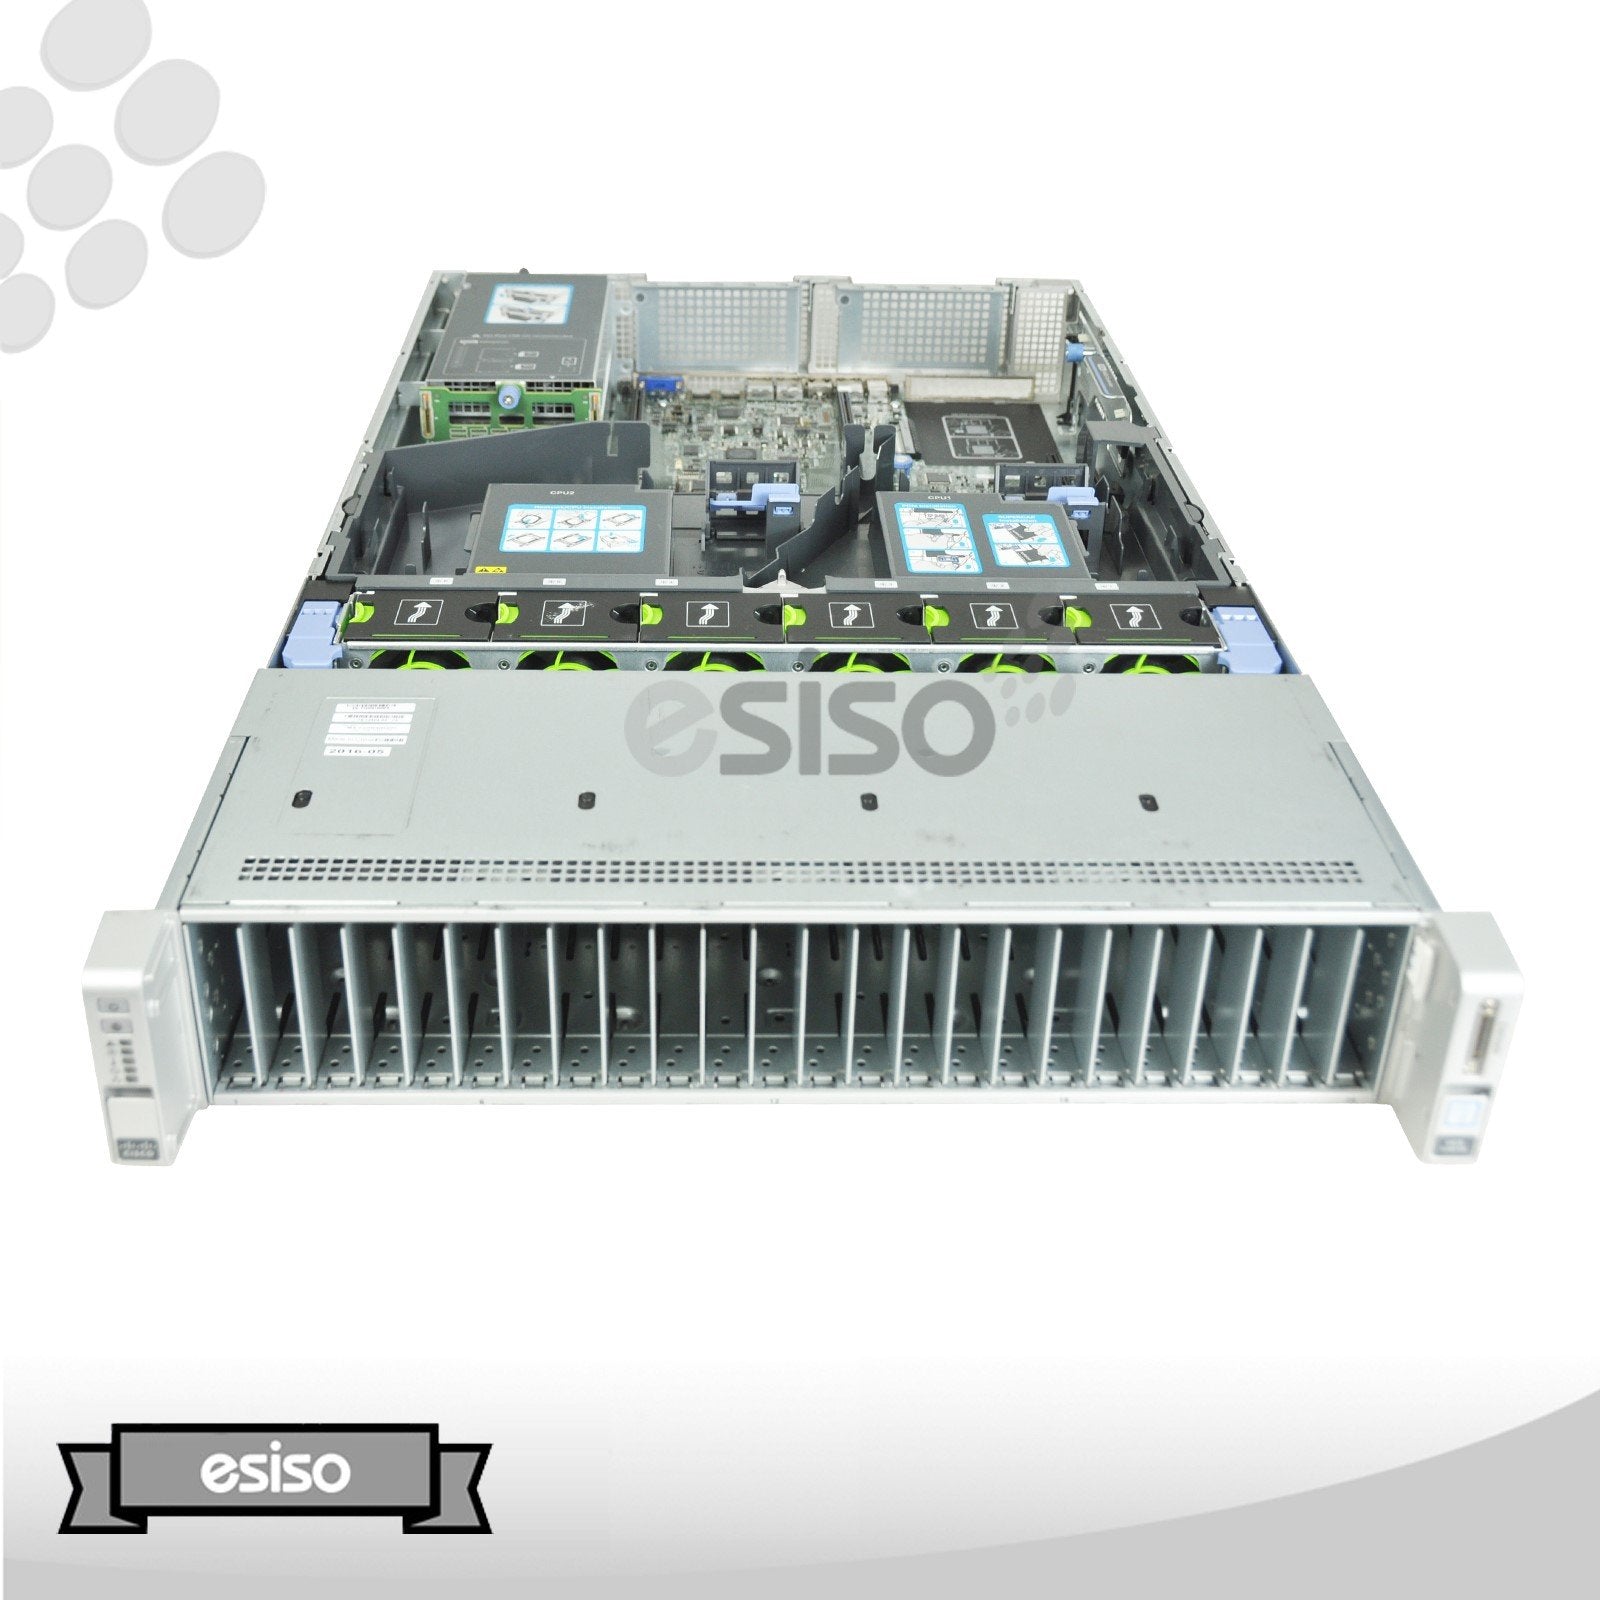 CISCO UCS C240 M4 8SFF SERVER 2x12 CORE E5-2678V3 2.5GHz 64GB RAM NO HDD NO RAIL